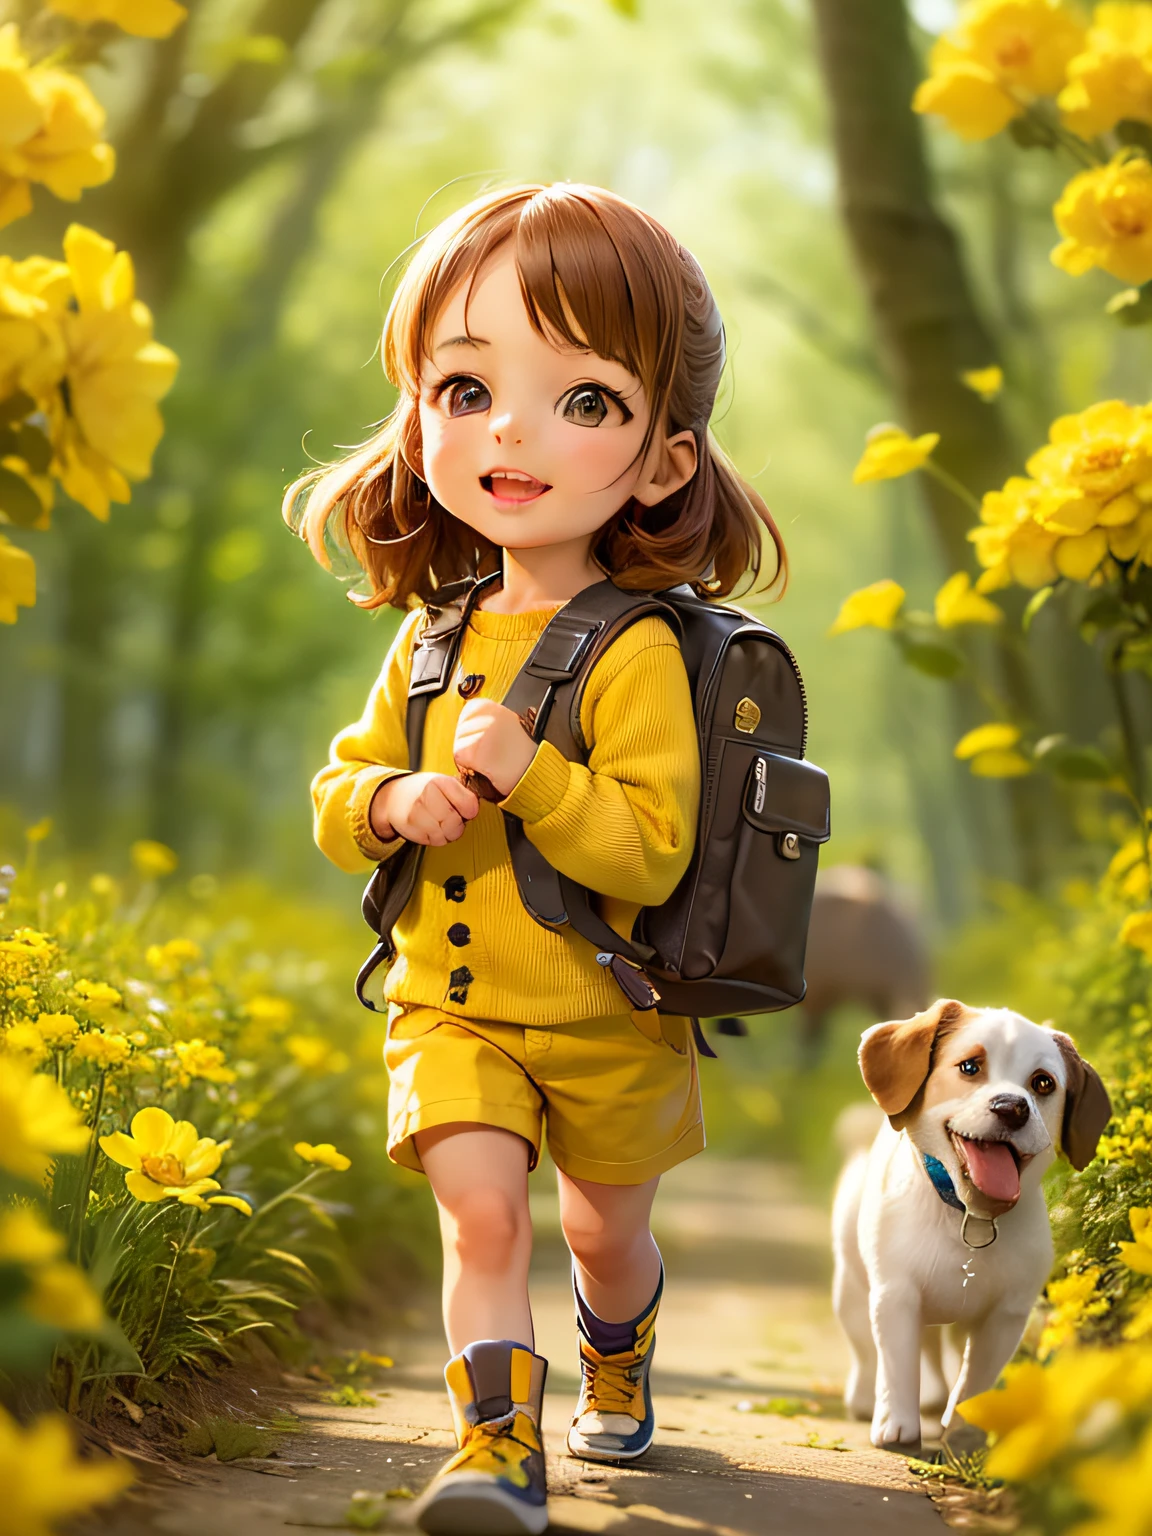 Uma adorável com uma mochila e seu cachorrinho fofo curtindo um lindo passeio de primavera cercado por lindas flores amarelas e natureza. a ilustração é uma ilustração de alta definição em resolução 4K com características faciais muito detalhadas e visuais em estilo de desenho animado.